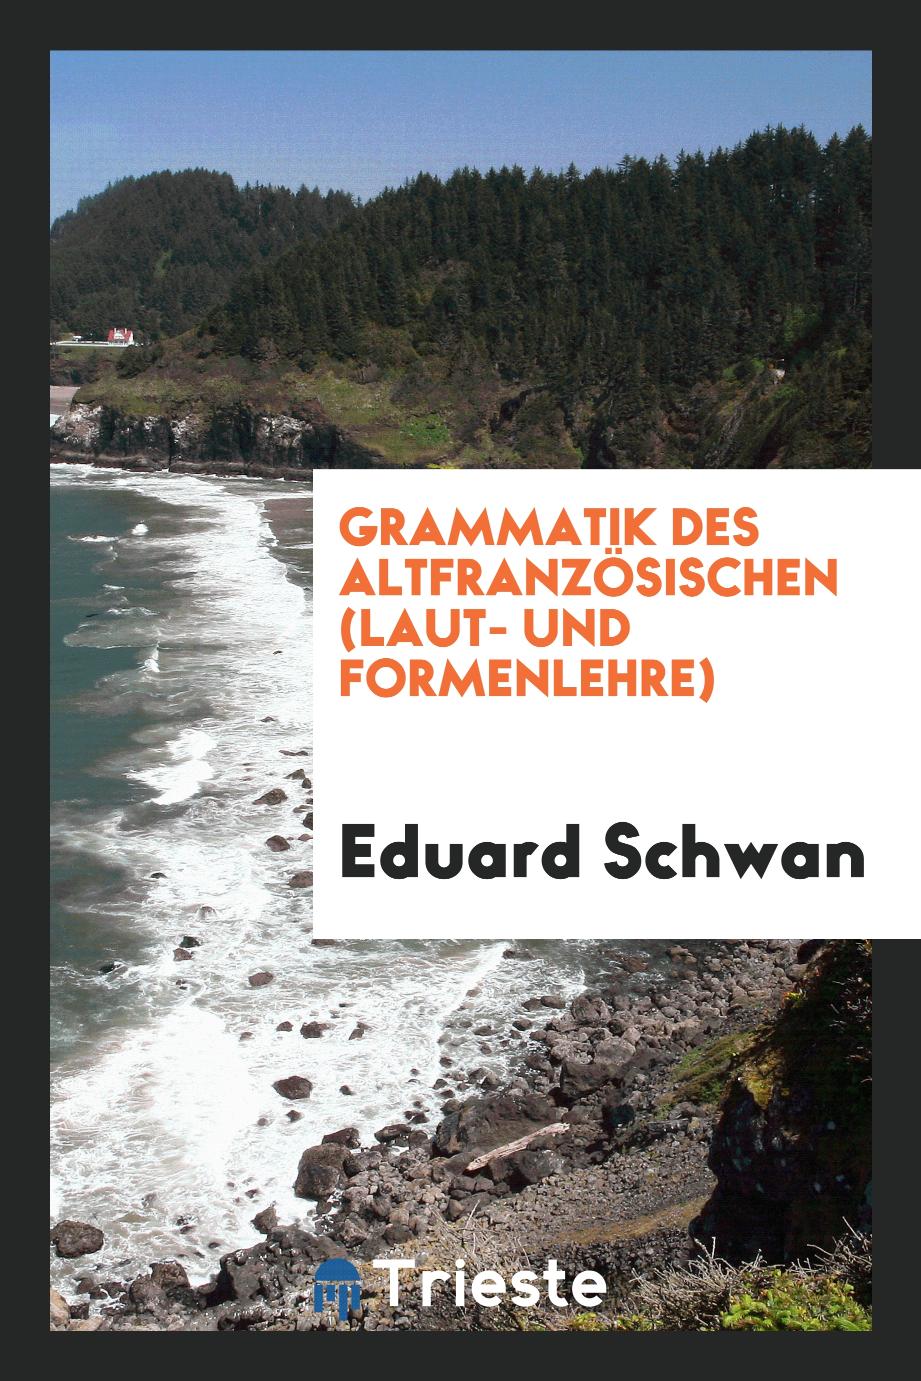 Grammatik des Altfranzösischen (Laut- und Formenlehre)